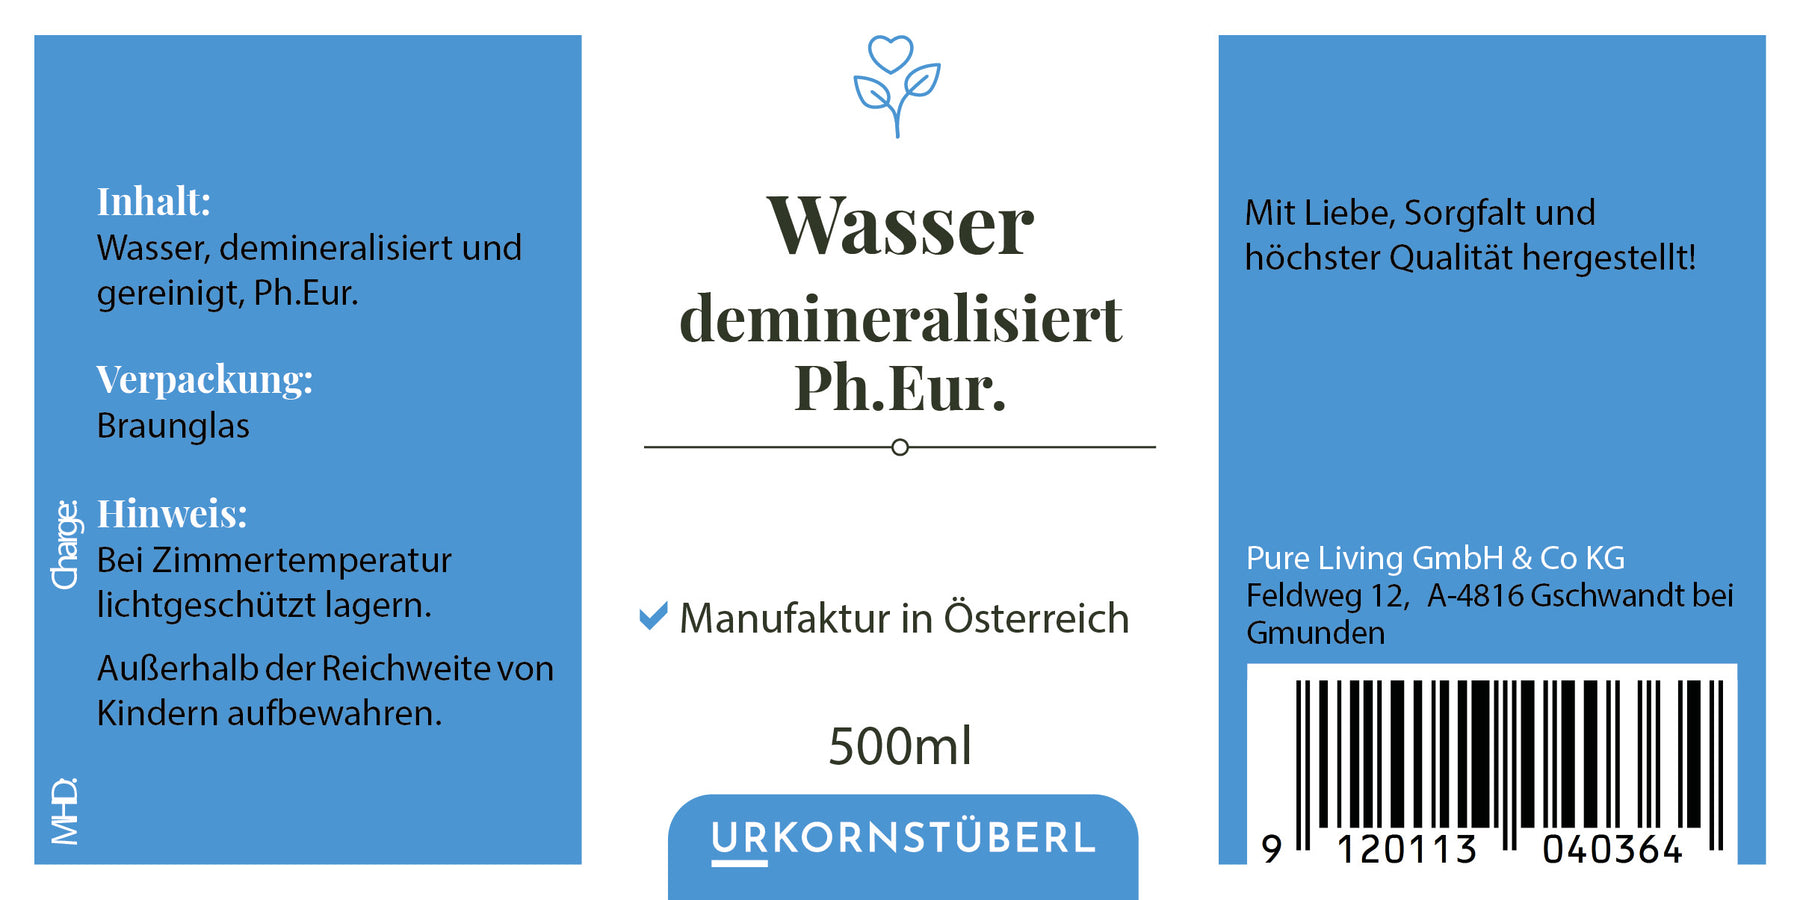 Wasser, demineralisiert, gereinigt, Ph. Eur., 500 ml